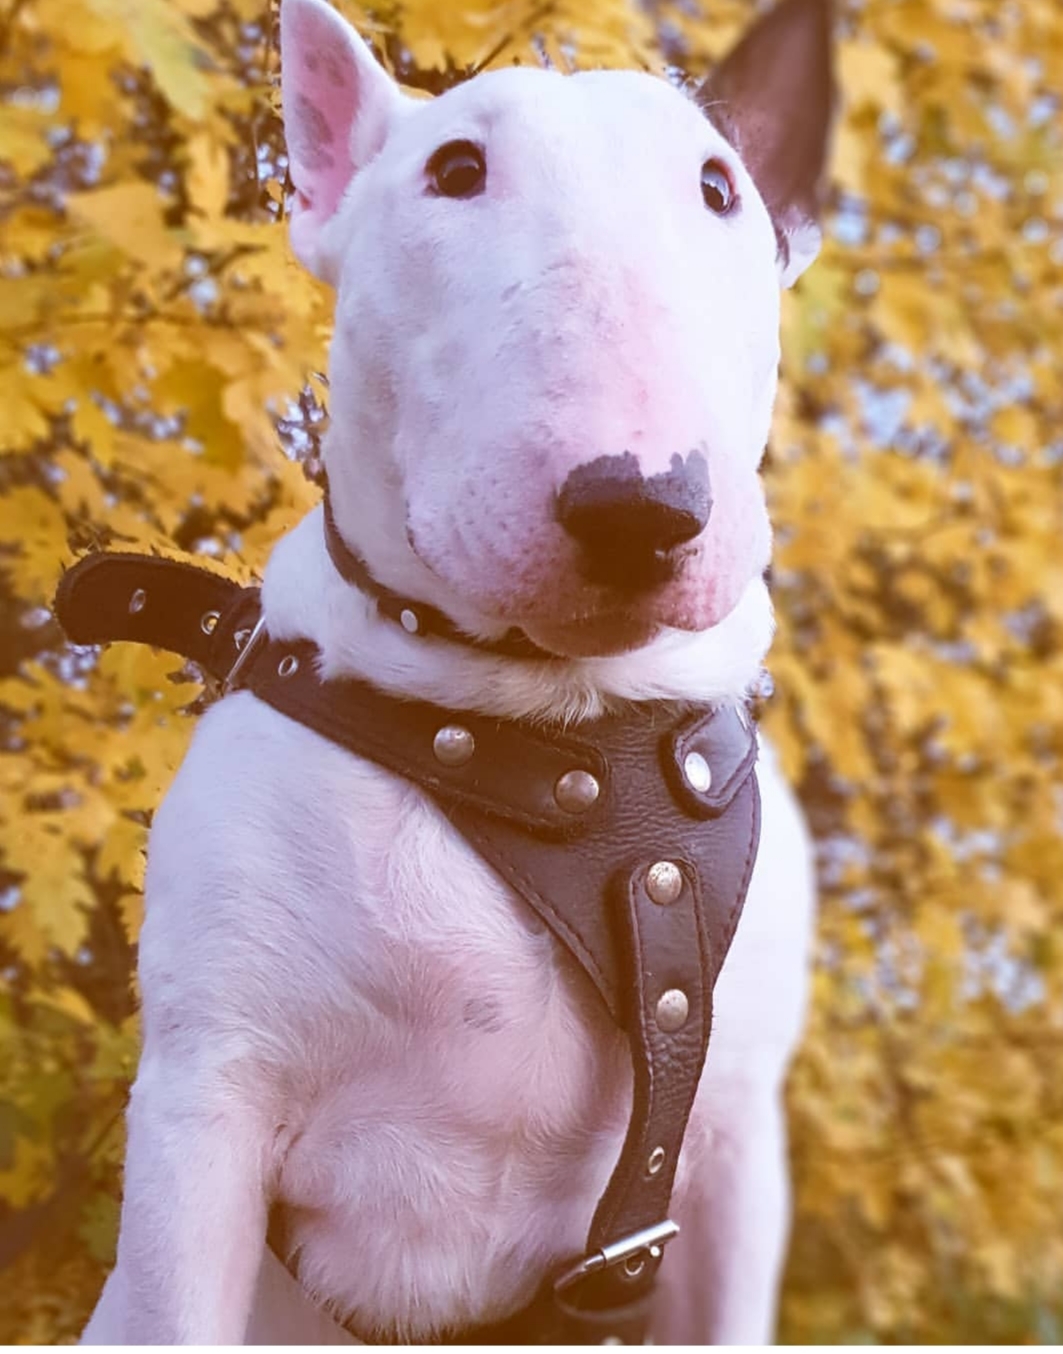 English Bull Terrier in autumn